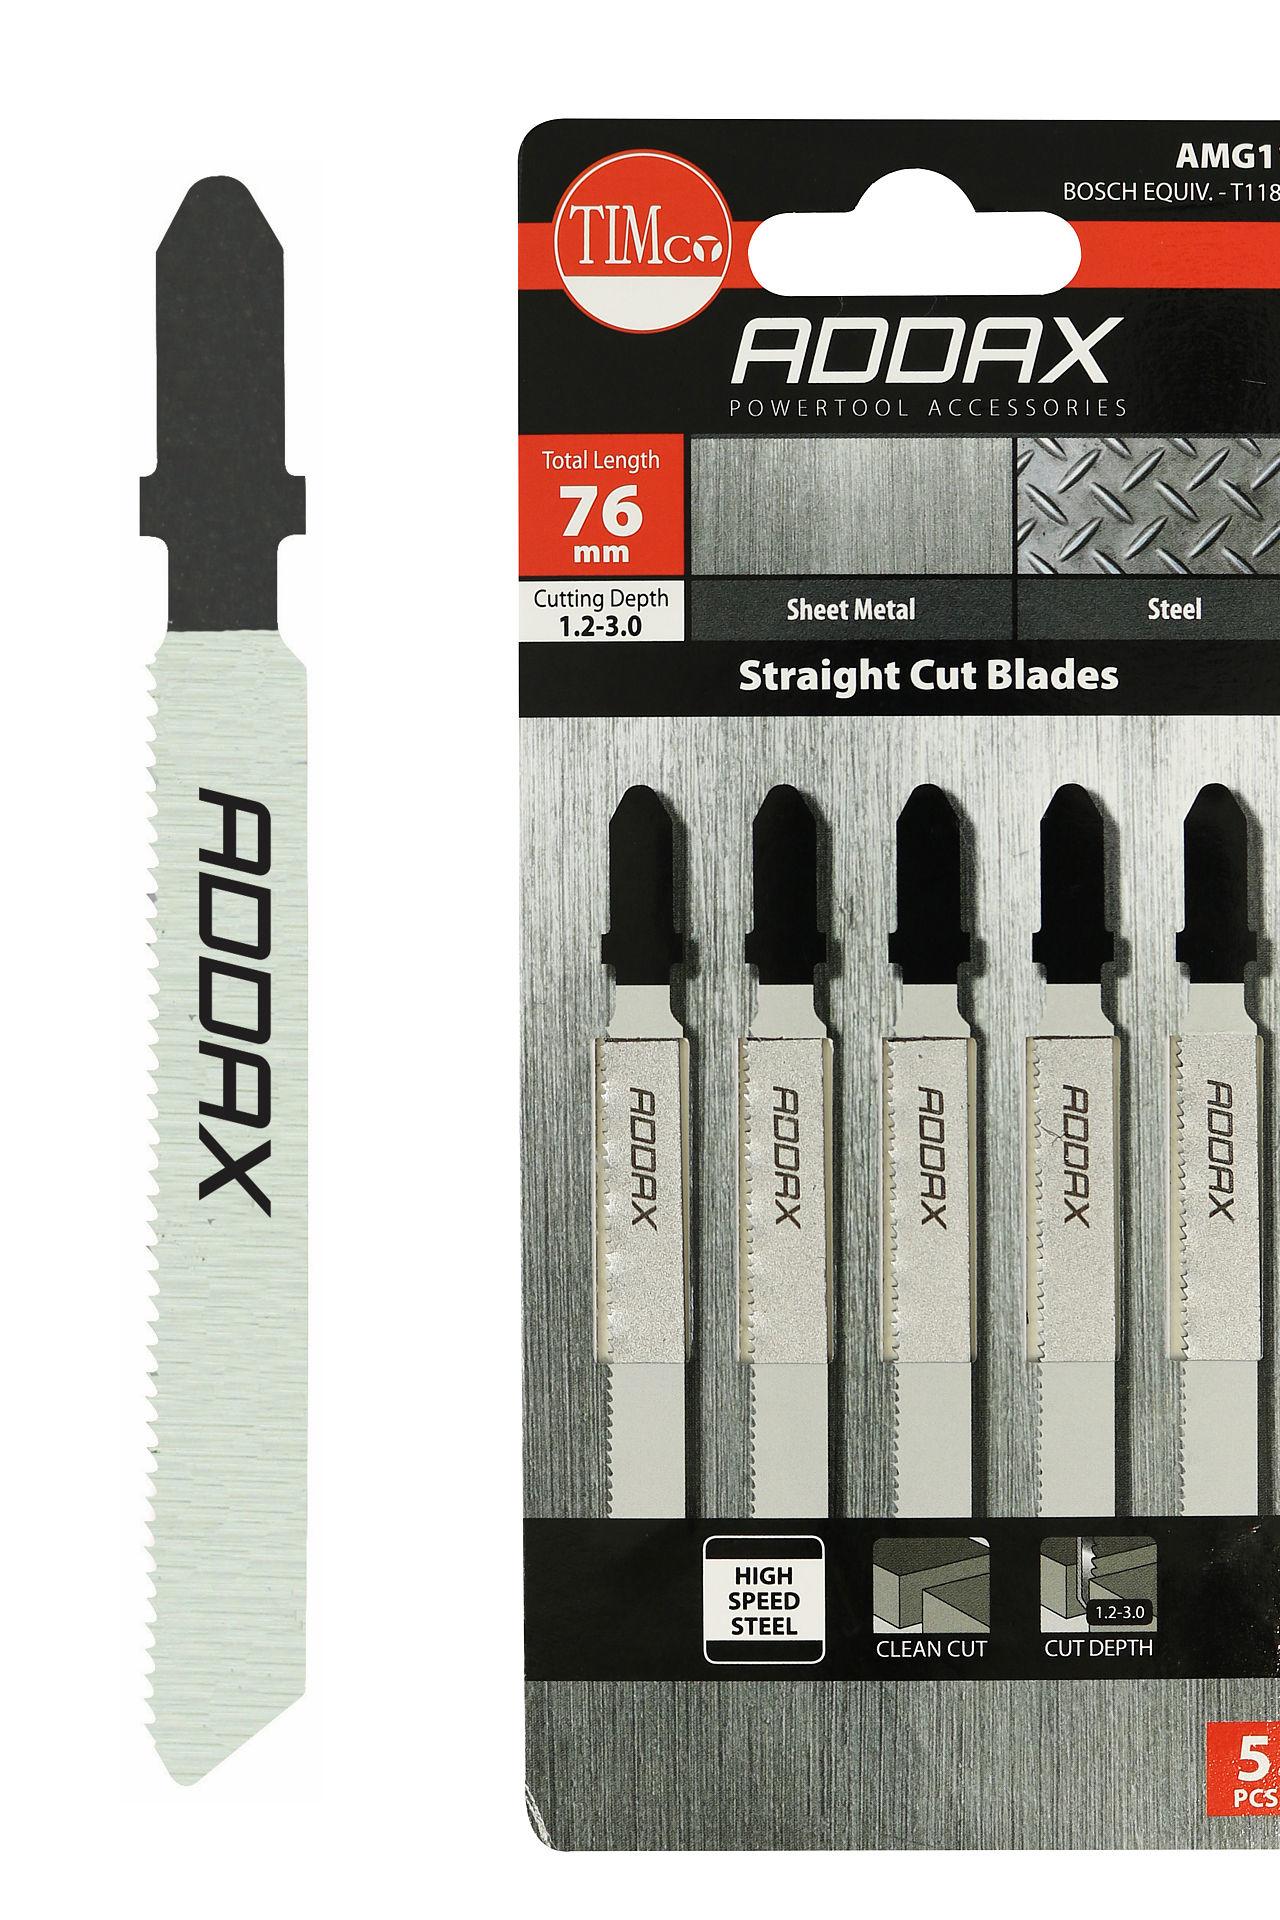 Addax 76mm Jigsaw Blades - Metal Cutting - HSS Blades - 21 Teeth/Inch